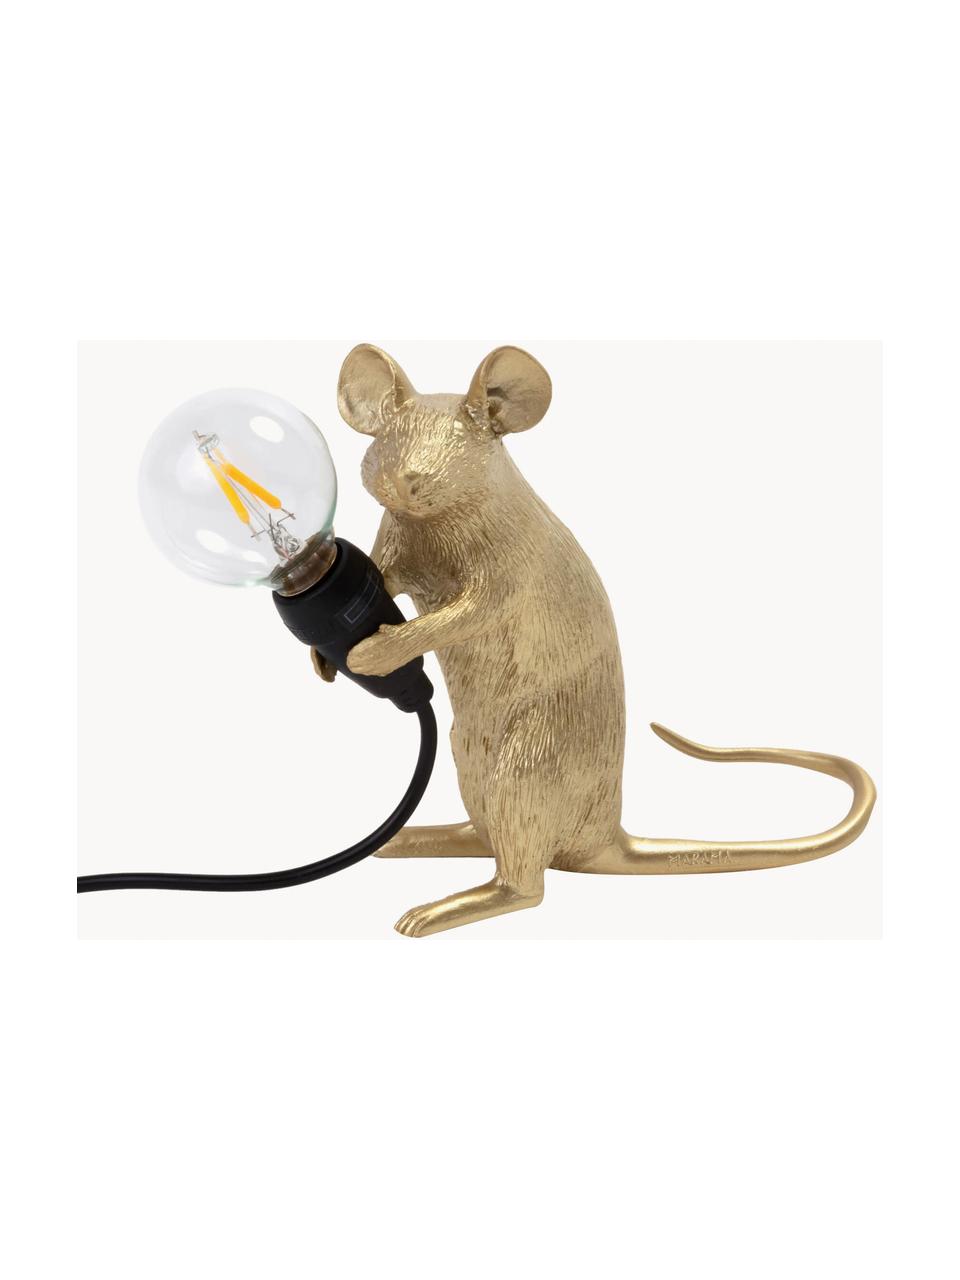 Kleine Designer LED-Tischlampe Mouse mit USB-Anschluss, Goldfarben, B 13 x H 15 cm